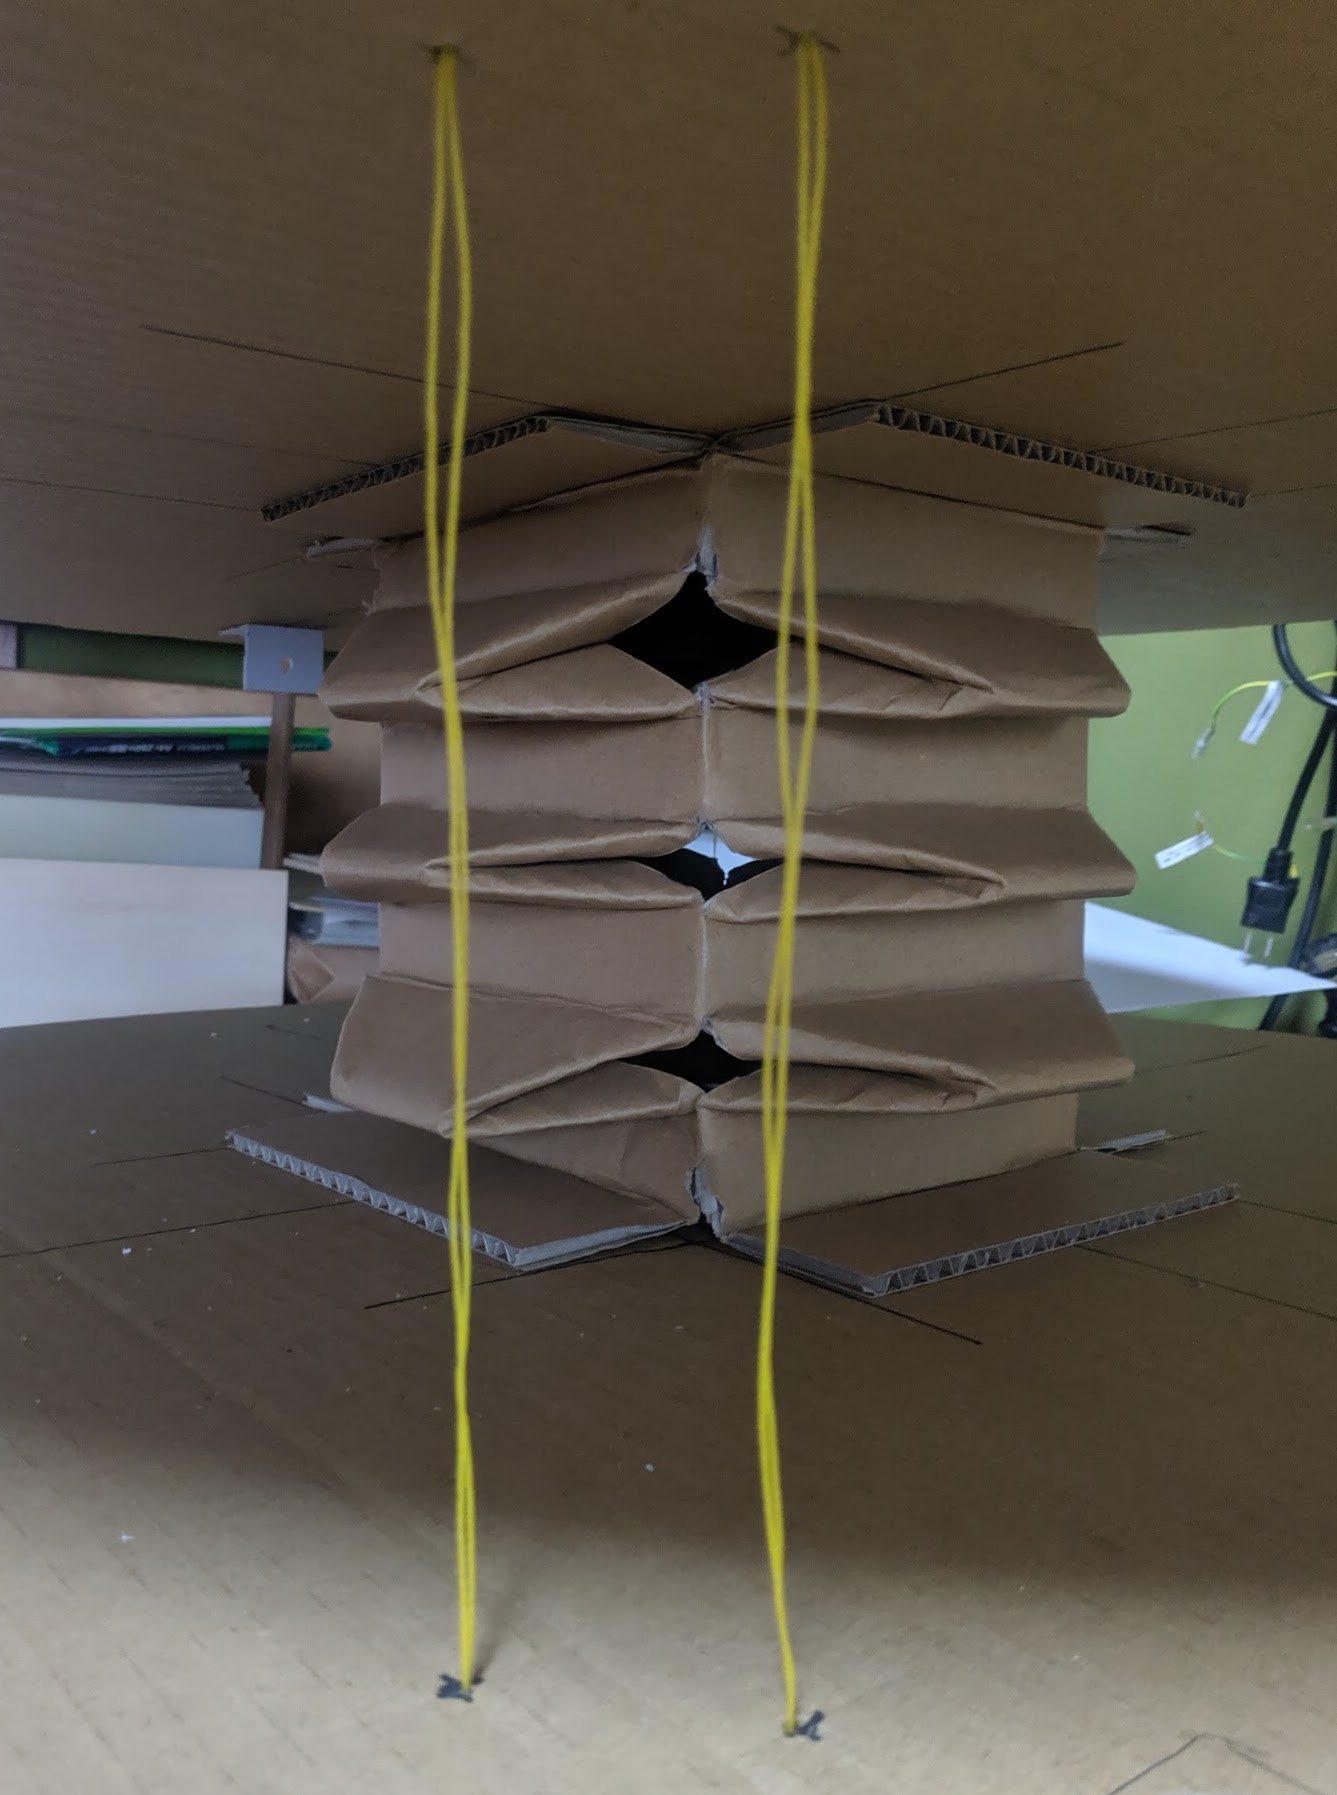 ロボット土俵の紙バネと水平用糸